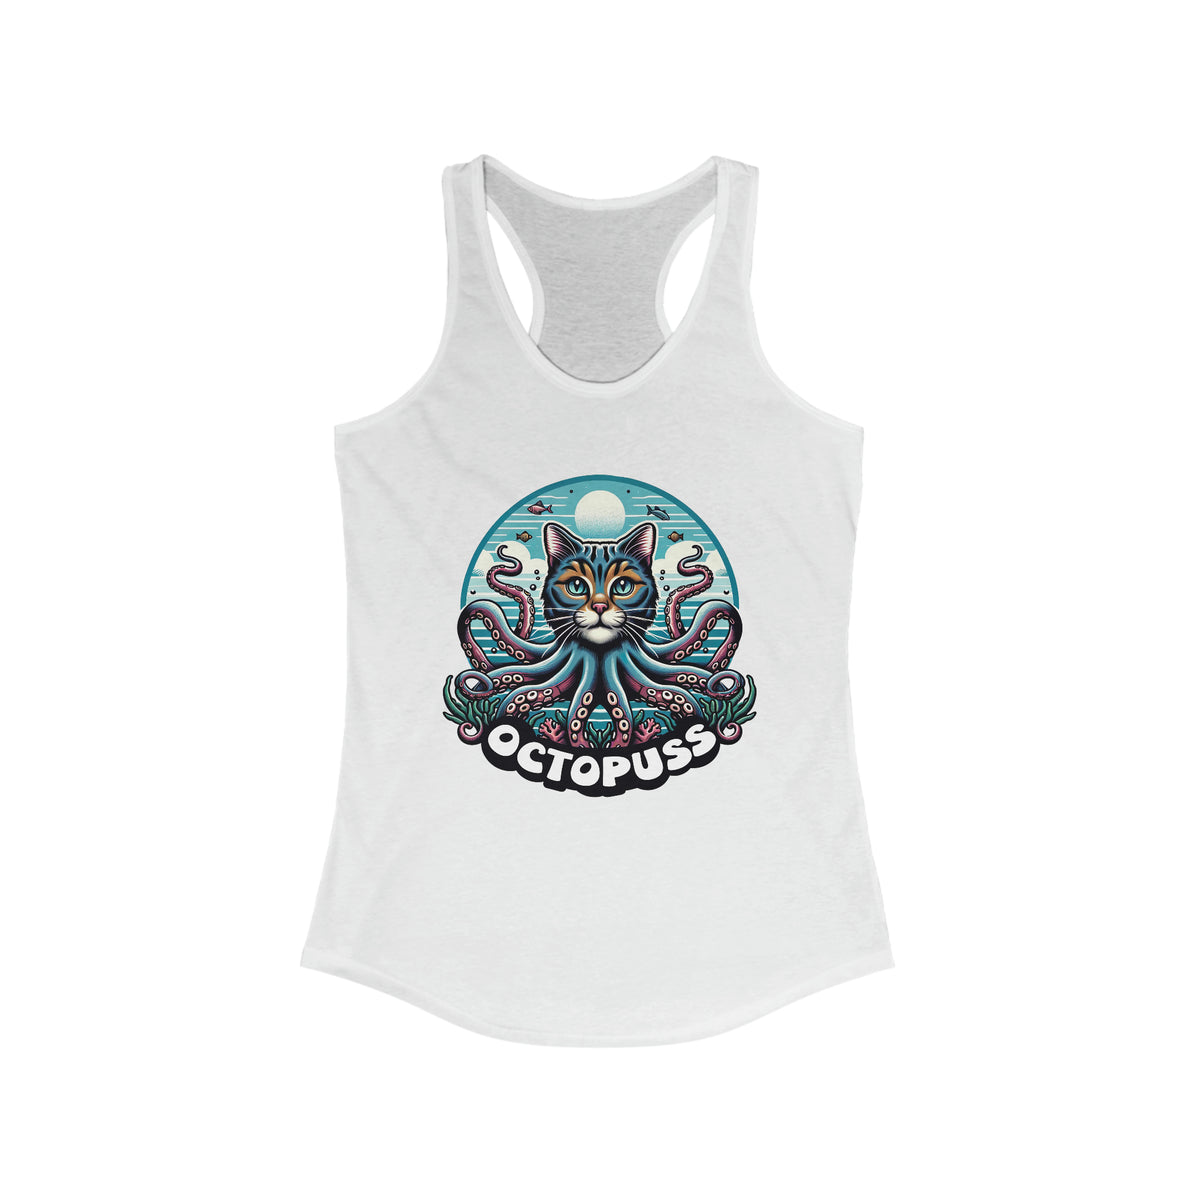 Octopuss Beach Bum Funny Cat Octopus Shirt | Cat Lover Gift | Beach Bum Shirt | Women's Slim-fit Racerback Tank Top